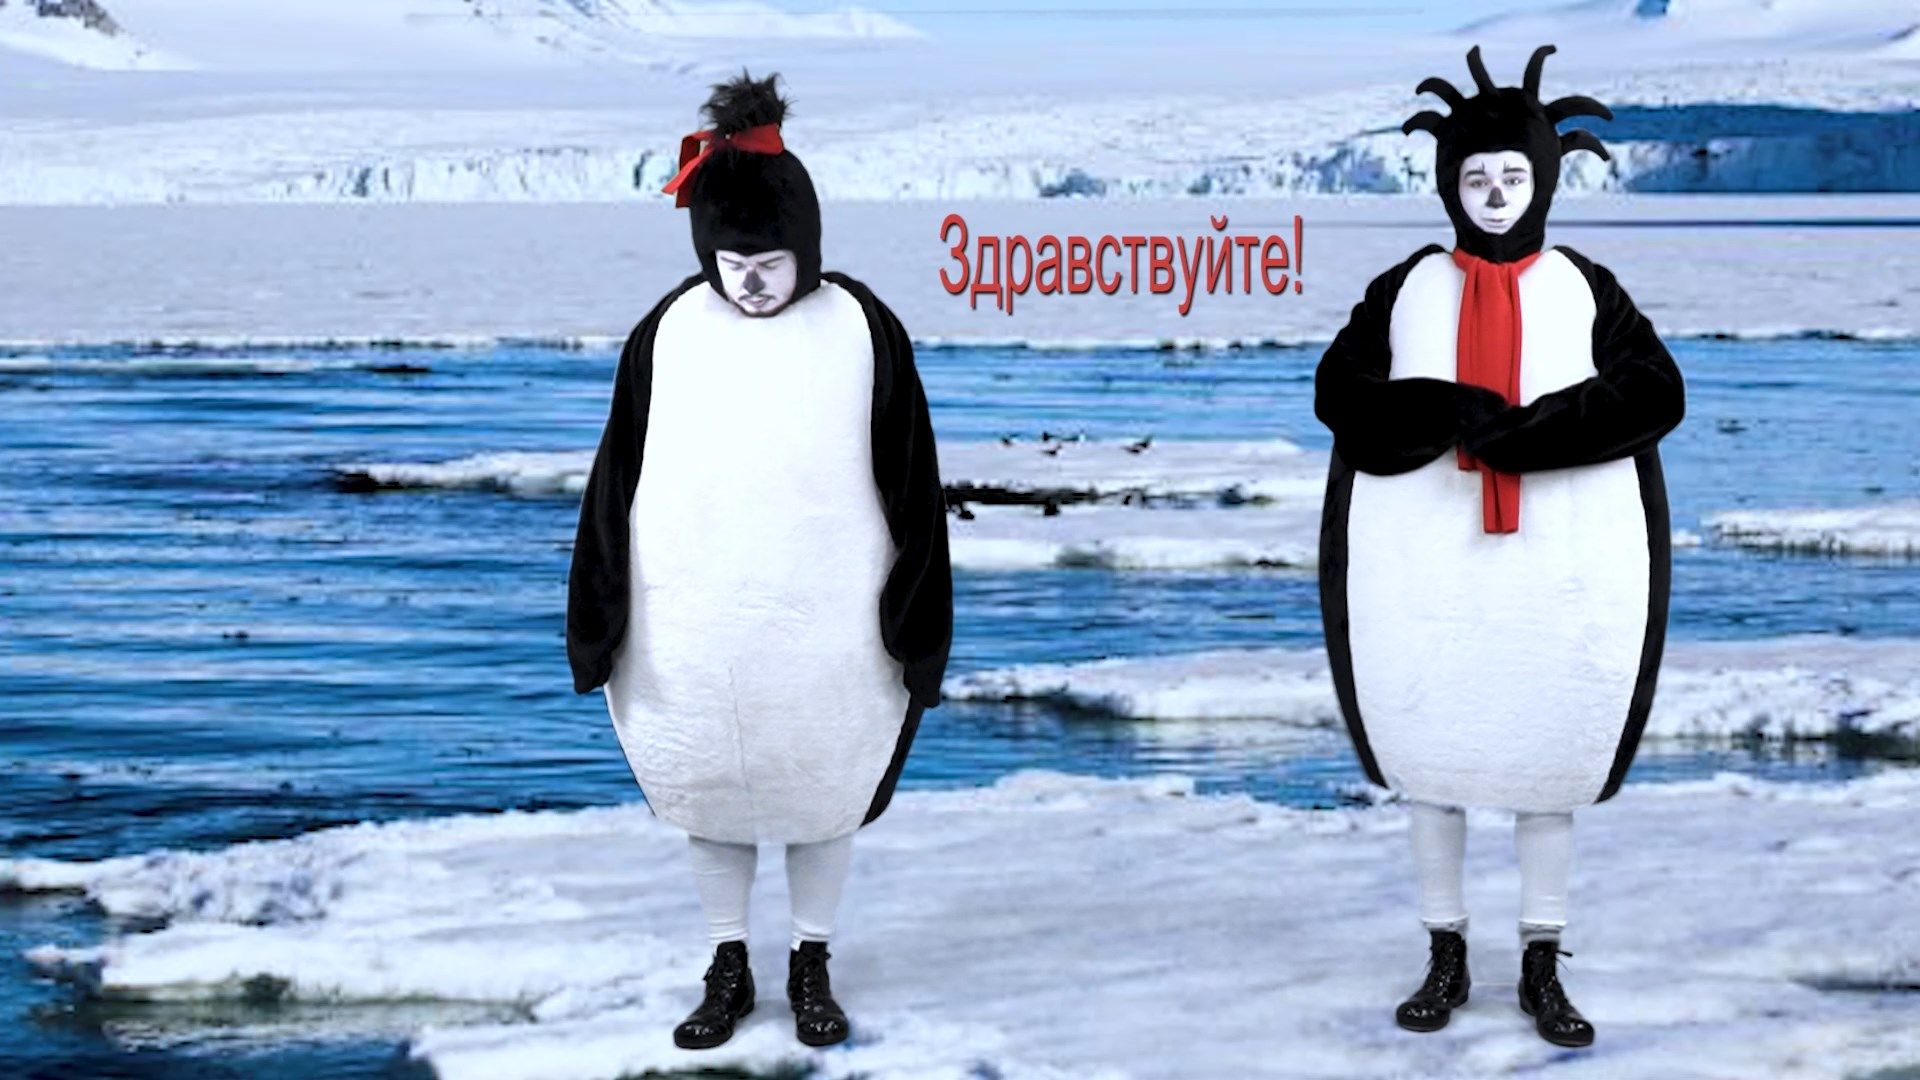 На кастинг ЮВТ-24 записали «пингвиний прогноз погоды»